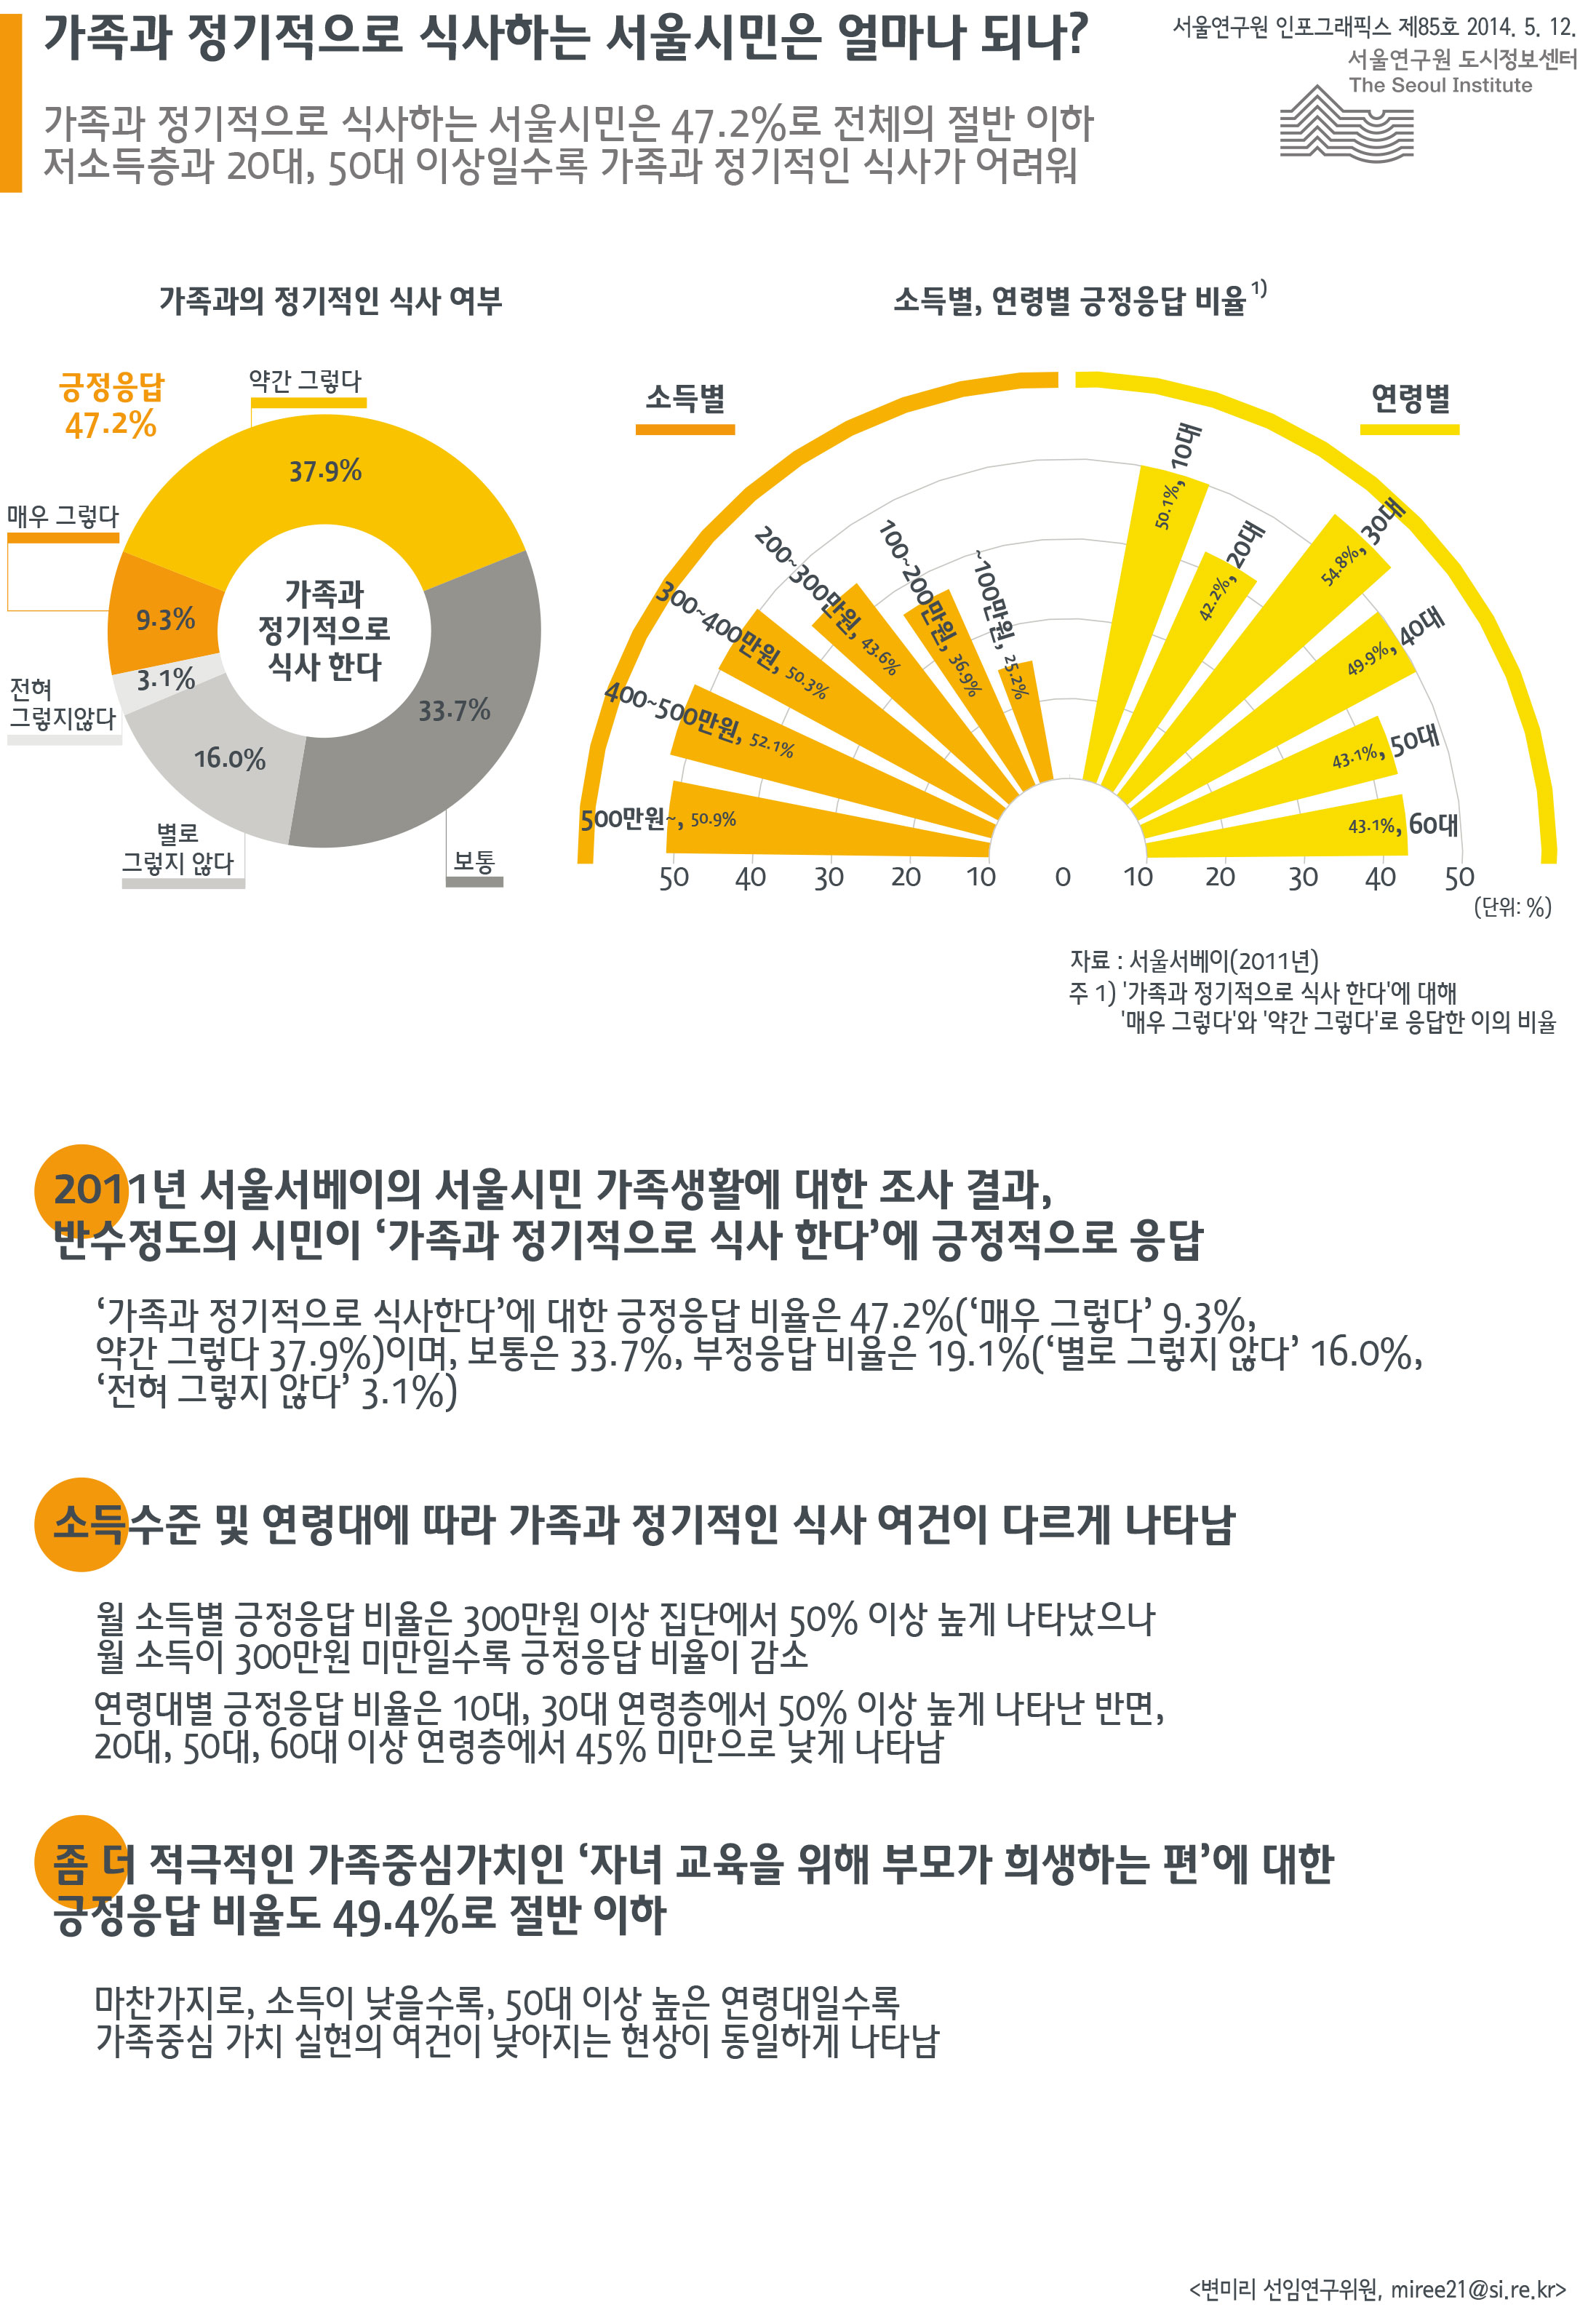 가족과 정기적으로 식사하는 서울시민은 얼마나 되나? 서울인포그래픽스 제85호 2014년 5월 12일 가족과 정기적으로 식사하는 서울시민은 47.2%로 전체의 절반 이하. 저소득층과 20대, 50대 이상일수록 가족과 정기적인 식사가 어려움으로 정리될 수 있습니다. 인포그래픽으로 제공되는 그래픽은 하단에 표로 자세히 제공됩니다.